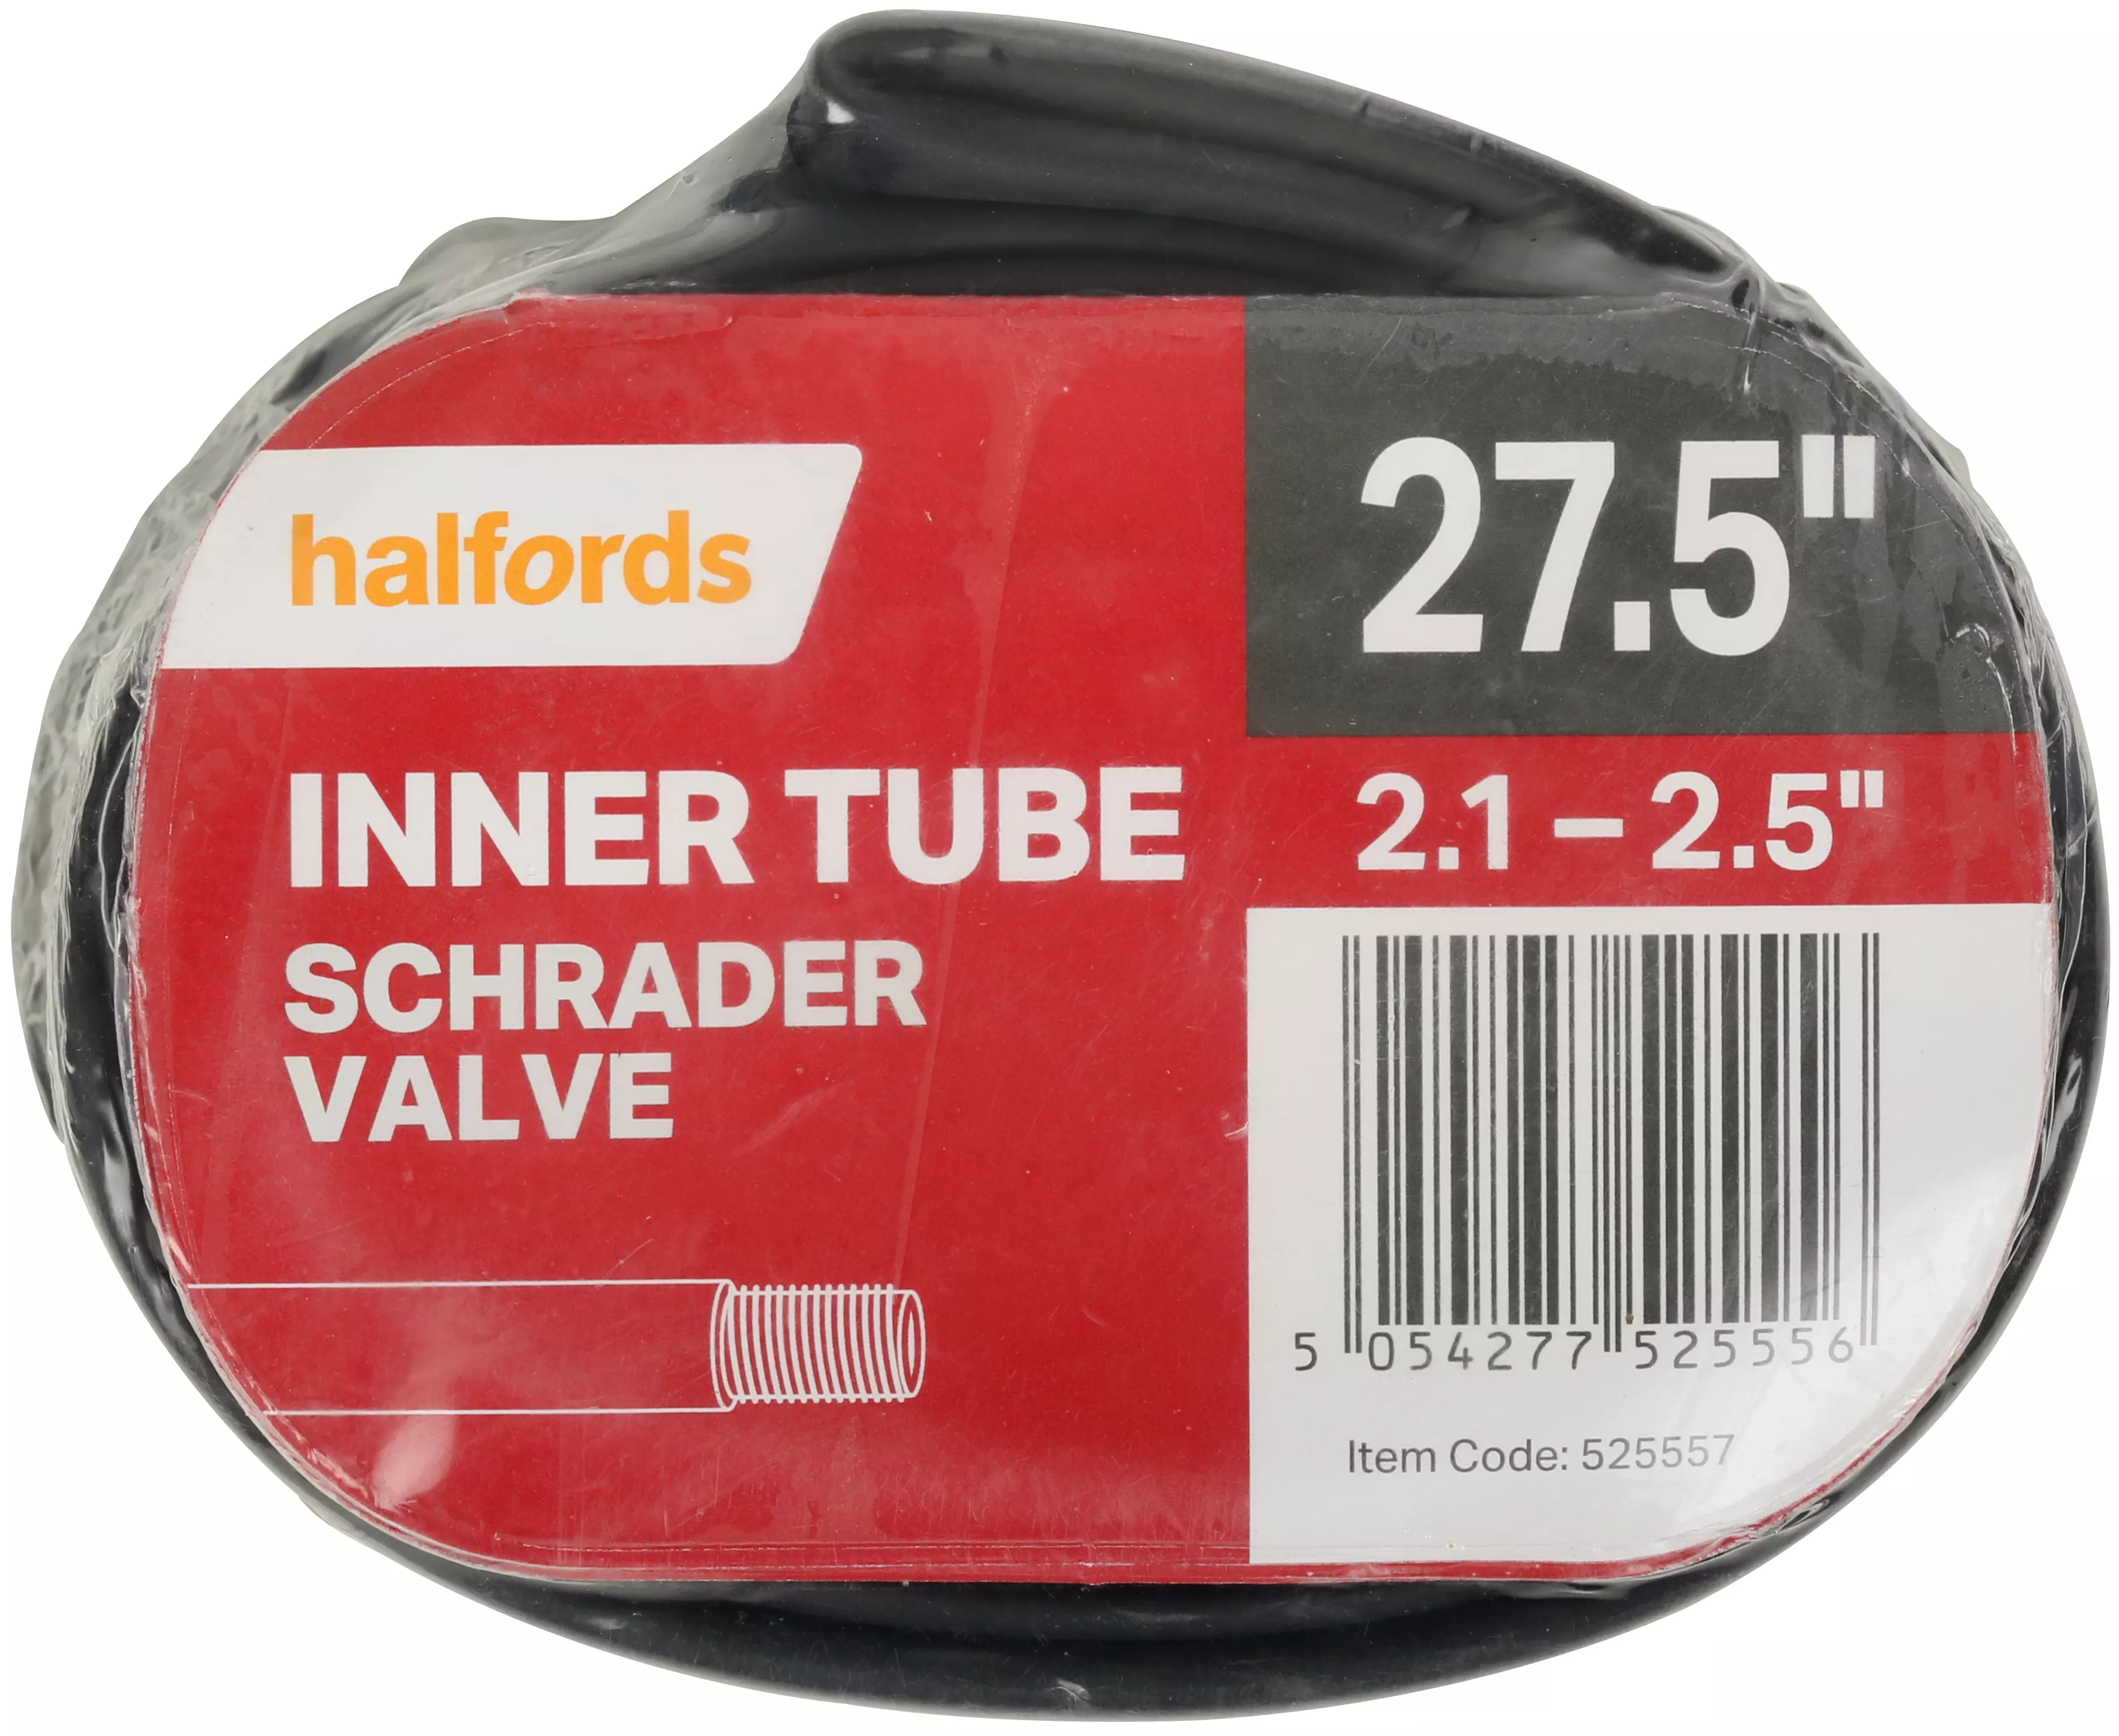 650b inner tubes